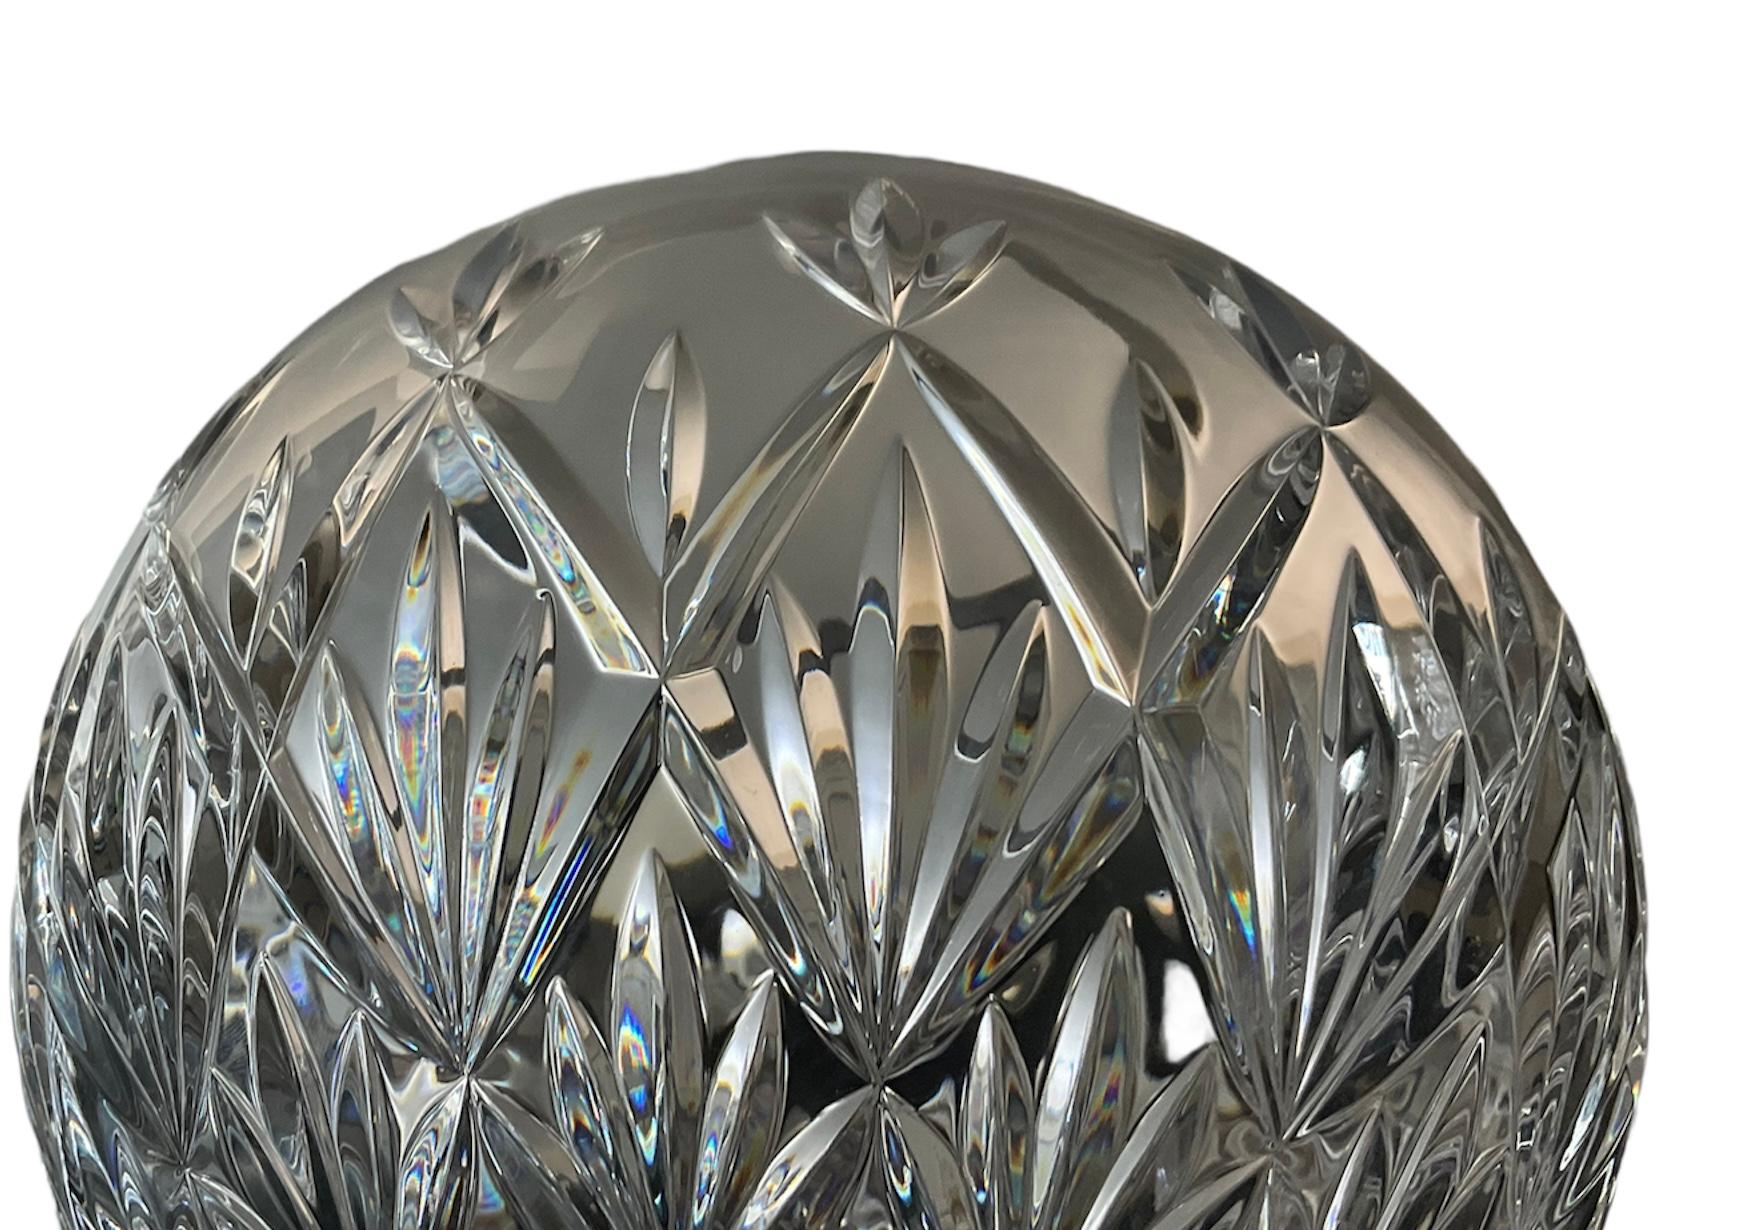 American Tiffany & Co. Cut Clear Crystal Round Bowl Vase